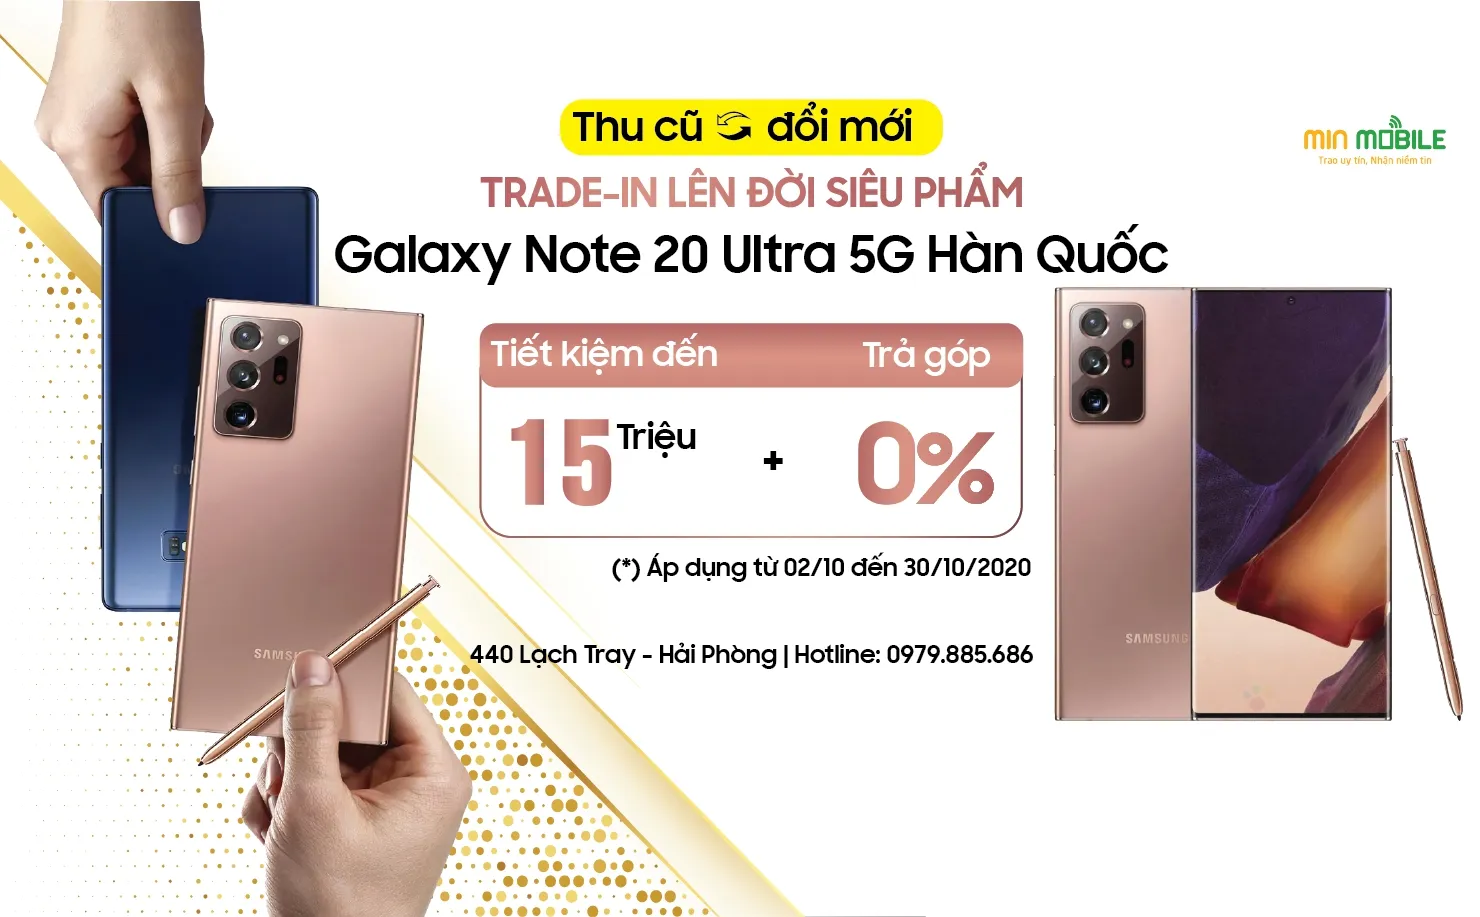 Chương trình “Thu cũ đổi mới – Lên đời Note 20 Ultra 5G Hàn Quốc” tại Minmobile